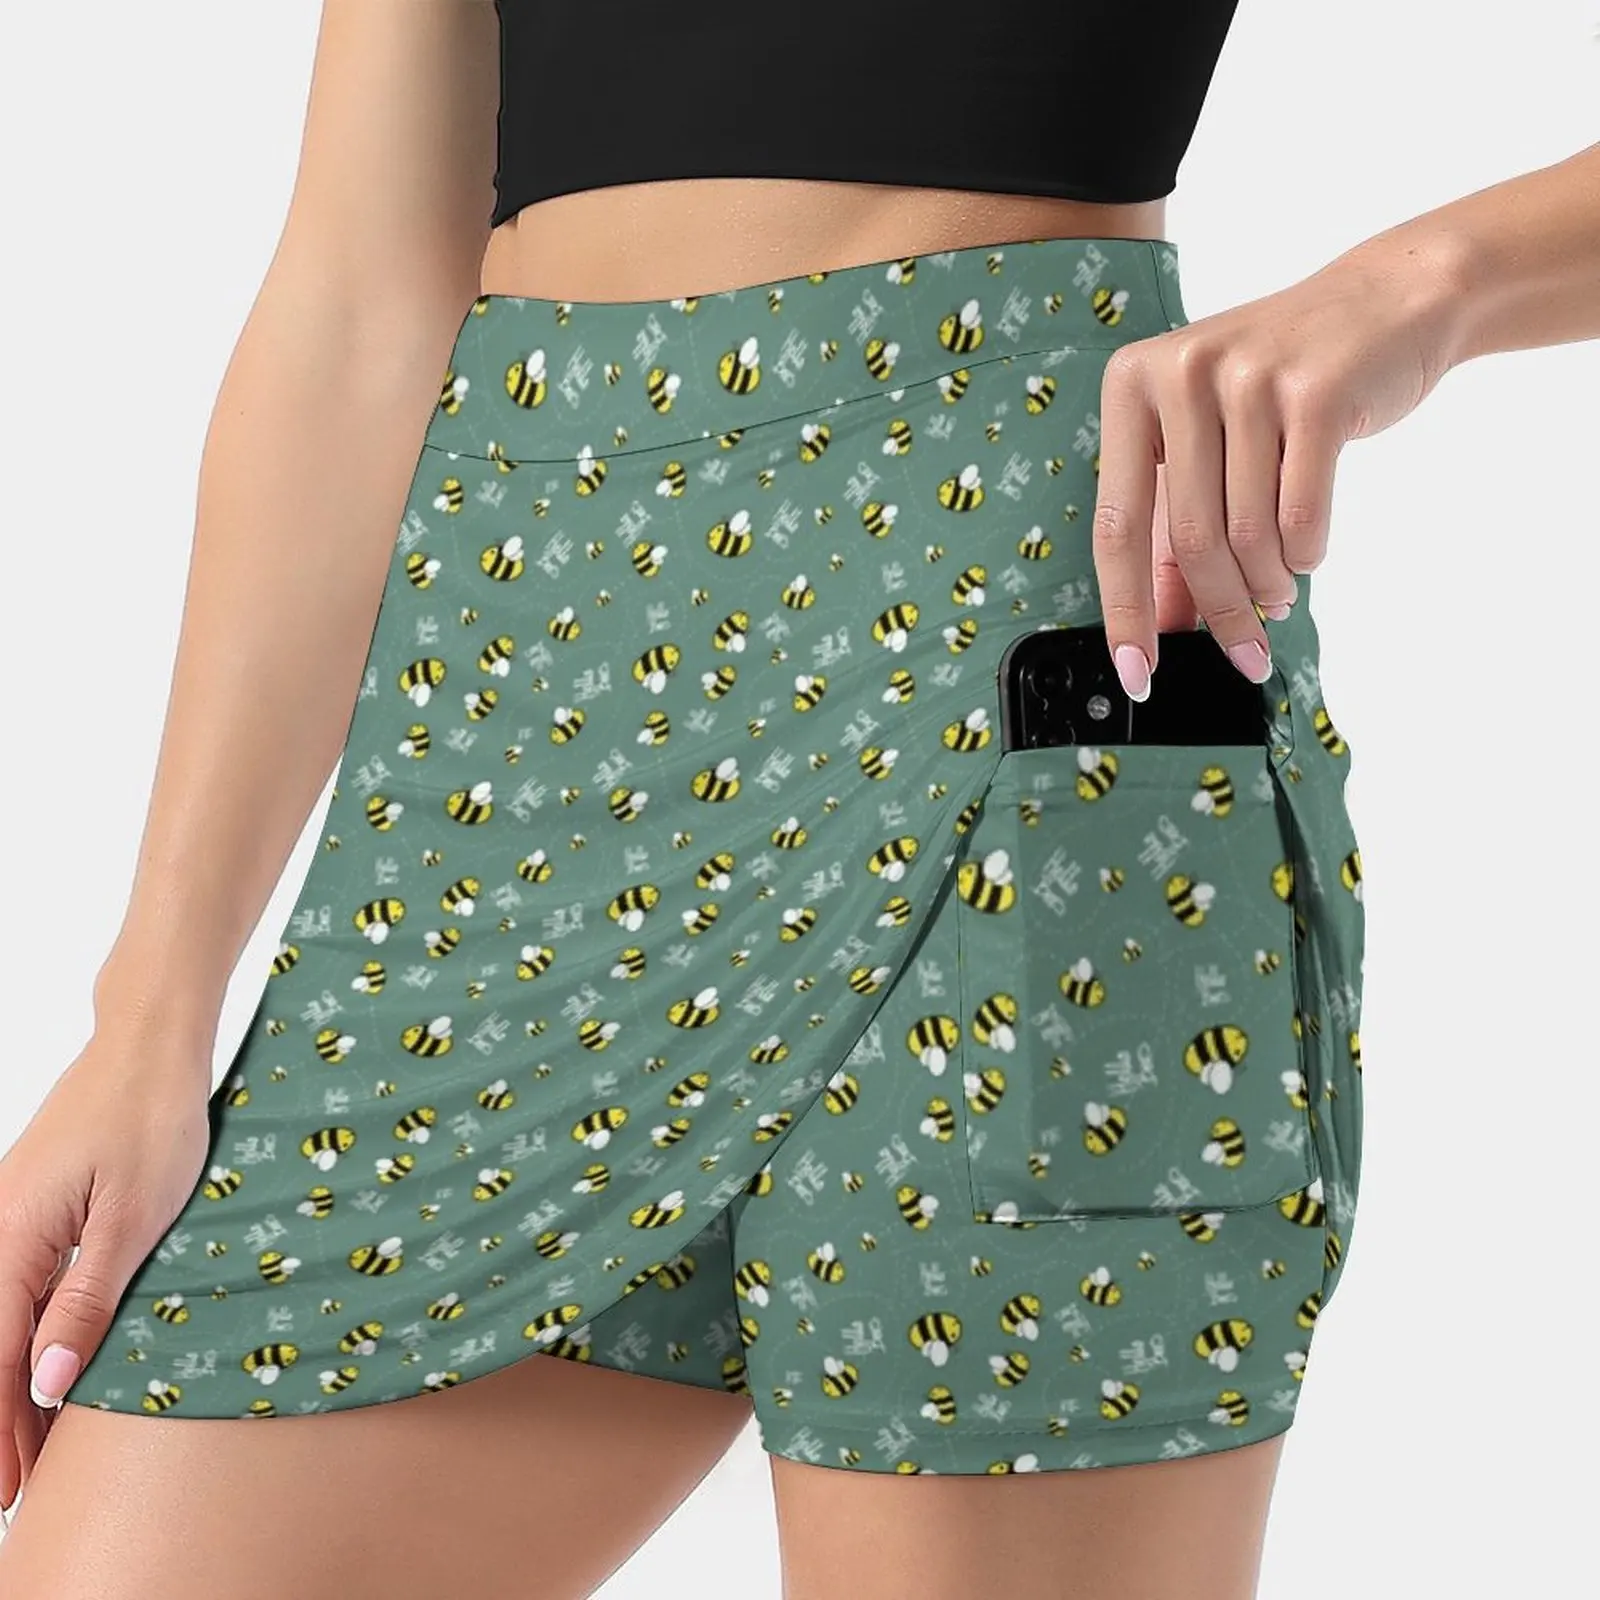 

Женская короткая юбка Hello Bees, зеленая офисная юбка с подсолнухами, драконом и гиком, 2022